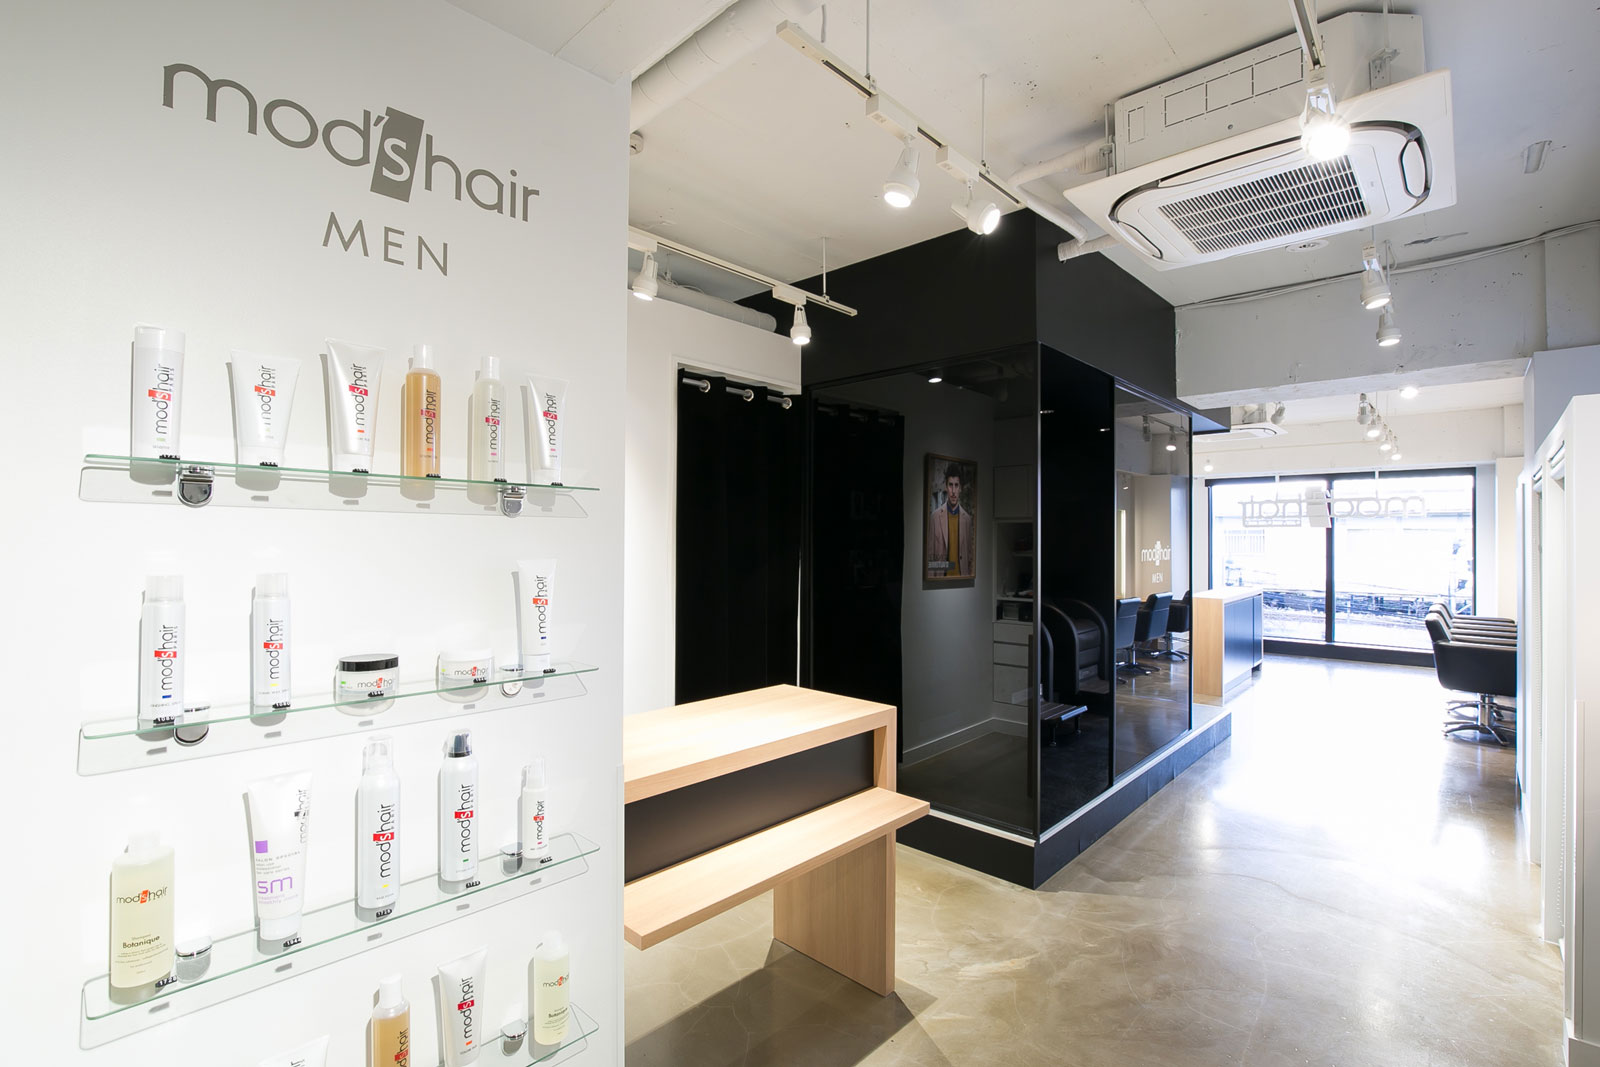 Men 中野店 Mod S Hair オフィシャルサイト ヘアサロン 美容室 美容院